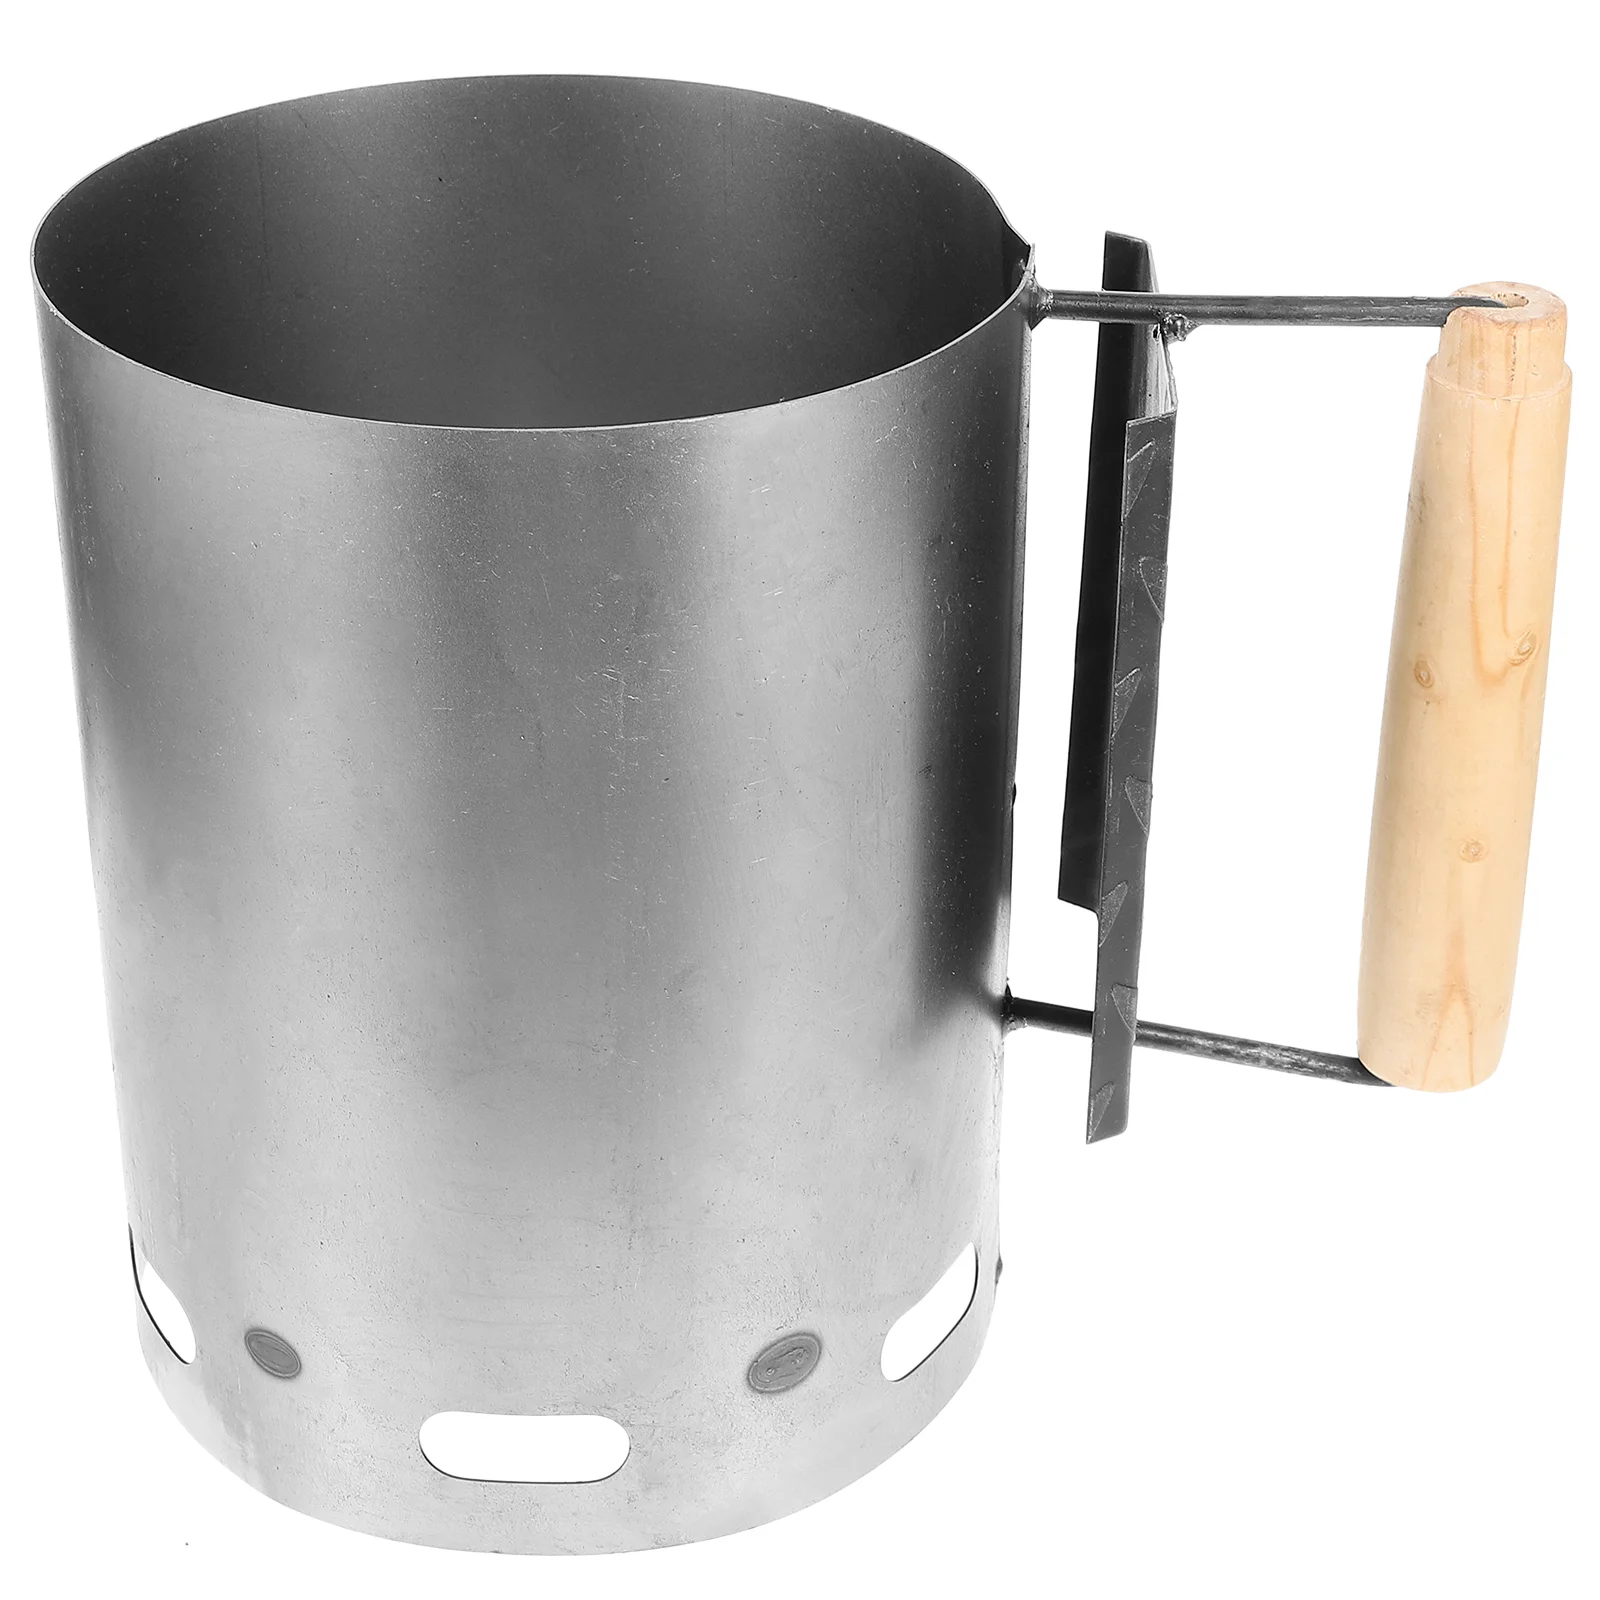 

Стартер для дымохода с углем Xl, набор для кемпинга и барбекю, прямоугольный держатель для гриля, открытый металлический инструмент для запуска огня